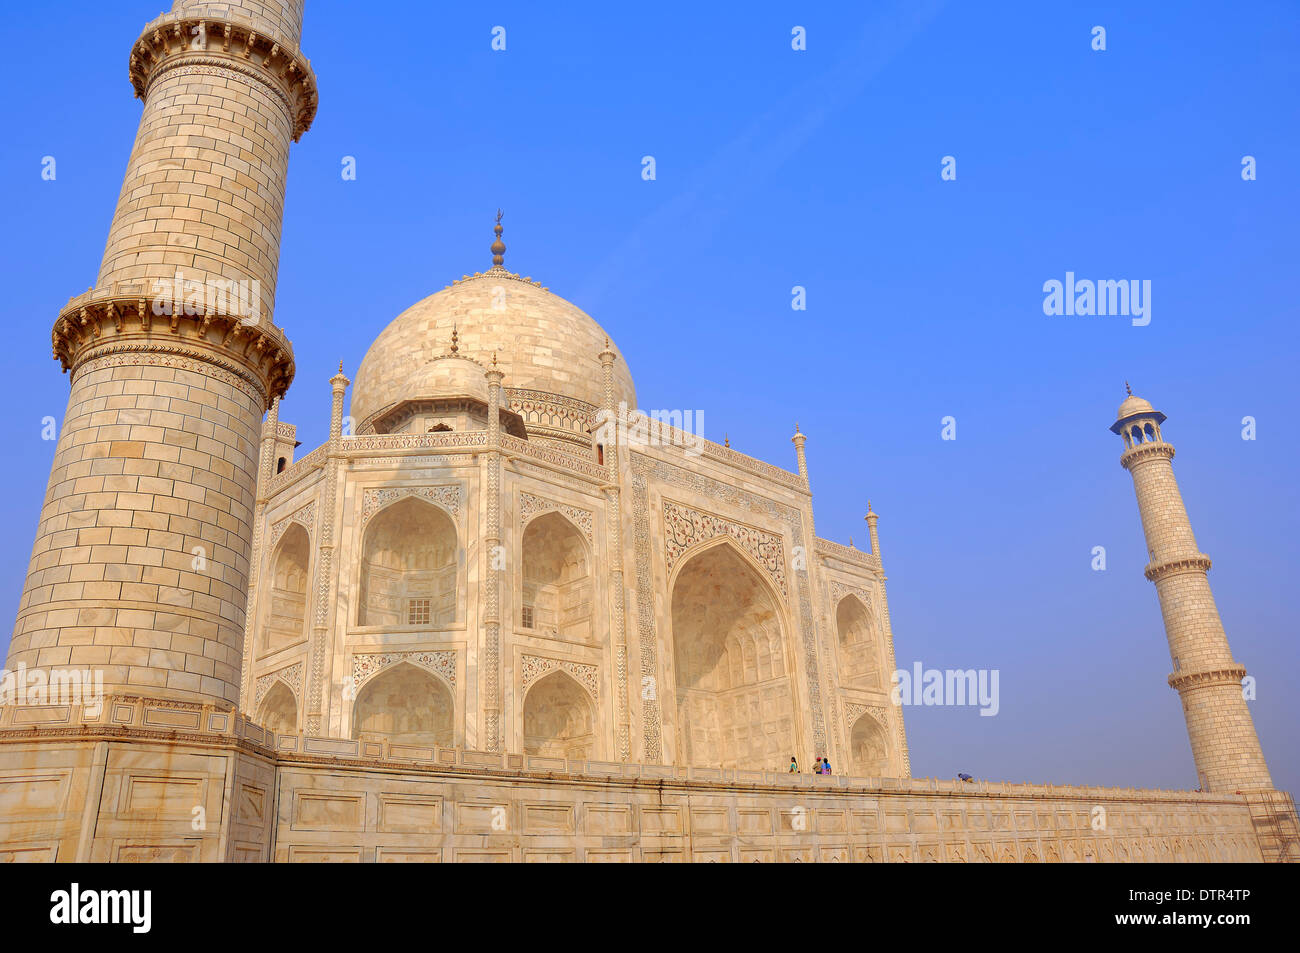 Taj Mahal Mausoleum Built By Mughal Emperor Shah Jahan In Memory Of His Wife Mumtaz Mahal 0816